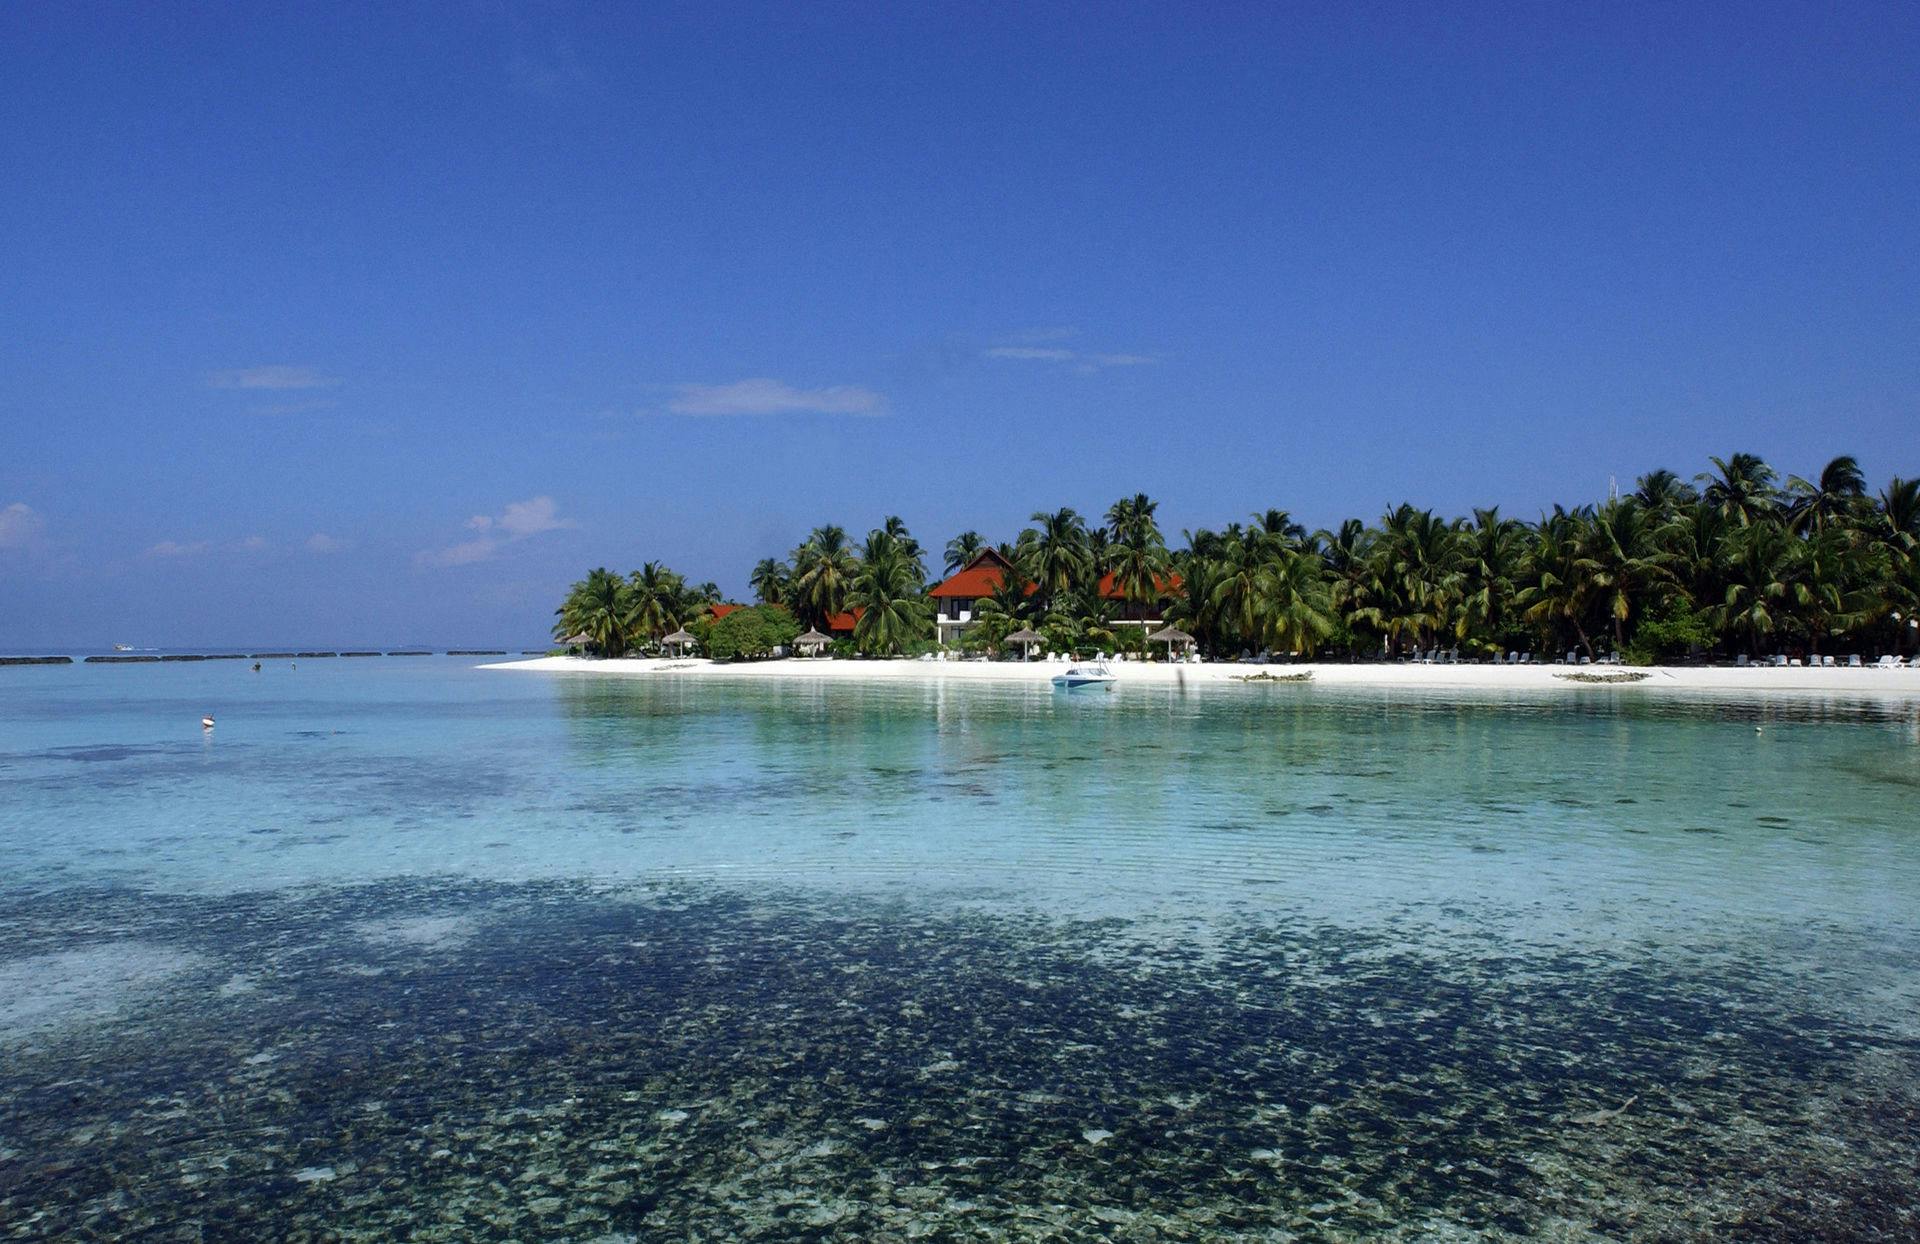 Maldiverne er en østat bestående af 1192 atoller, og på mange af de små øer ligger eksklusive hoteller.&nbsp;
